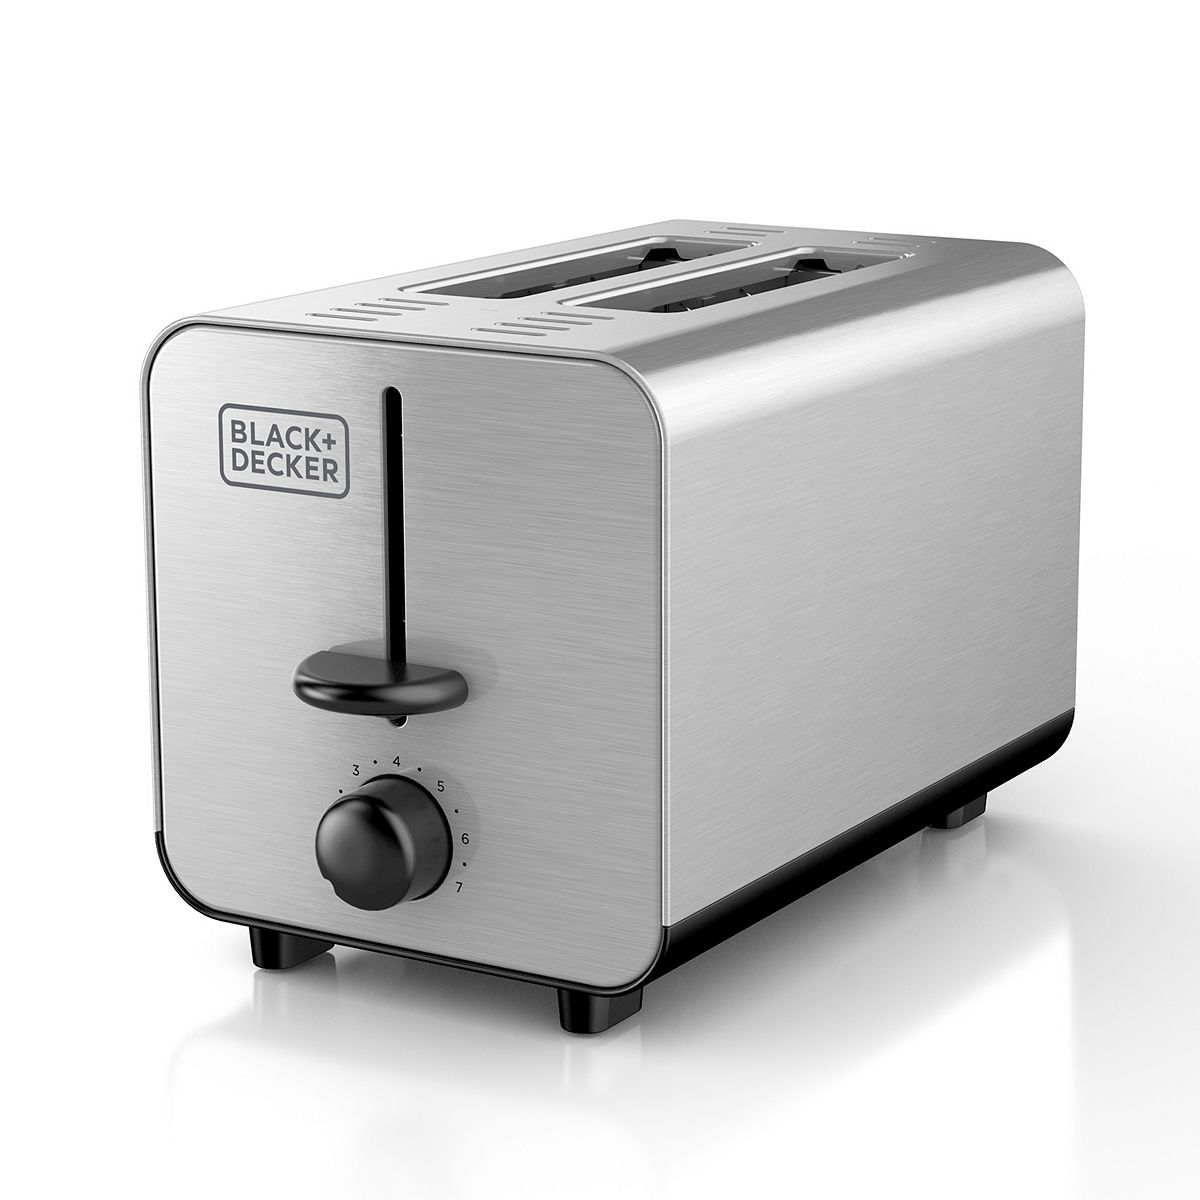 Rapid Toast 2-Slice Toaster, Stainless Steel